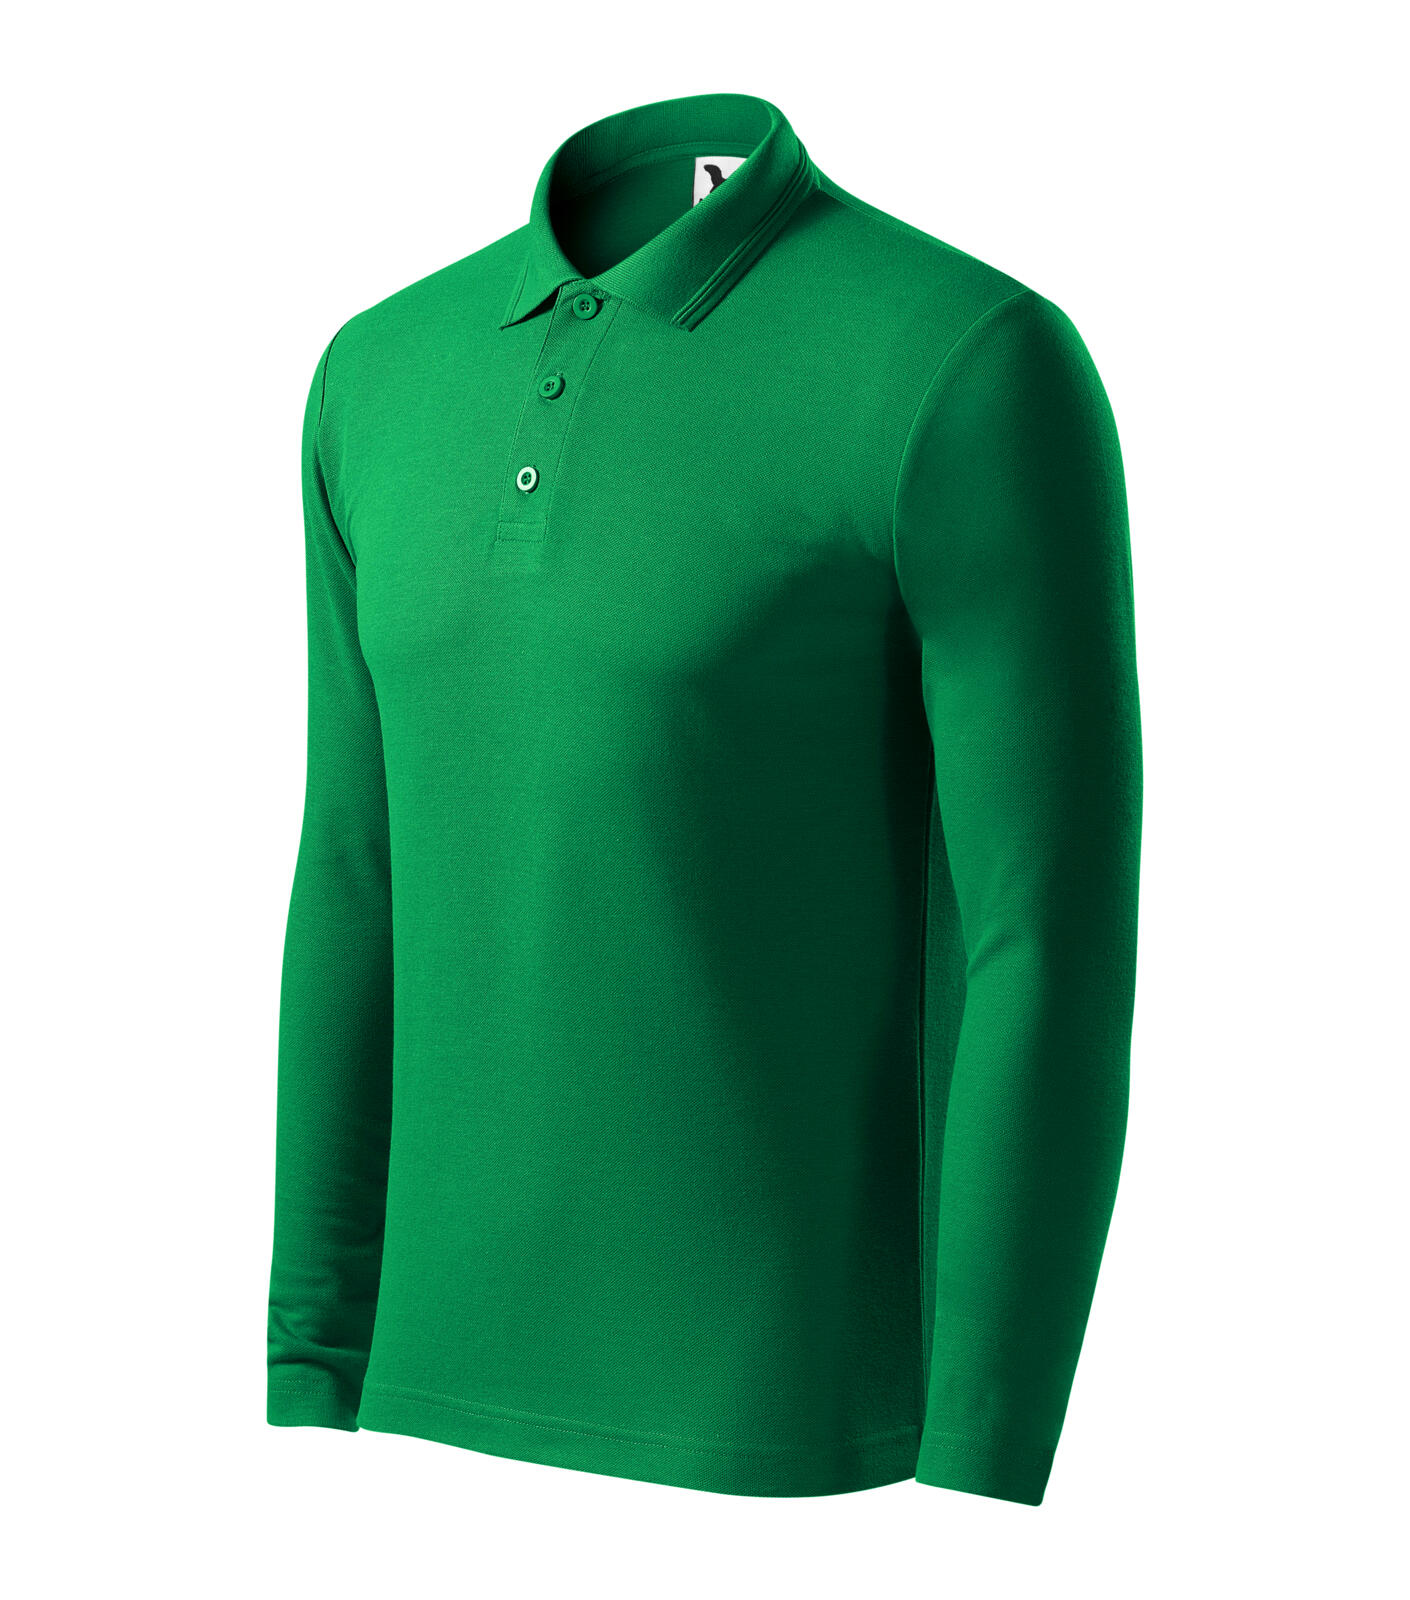 Pique Polo LS Polokošile pánská Barva: středně zelená, Velikost: S